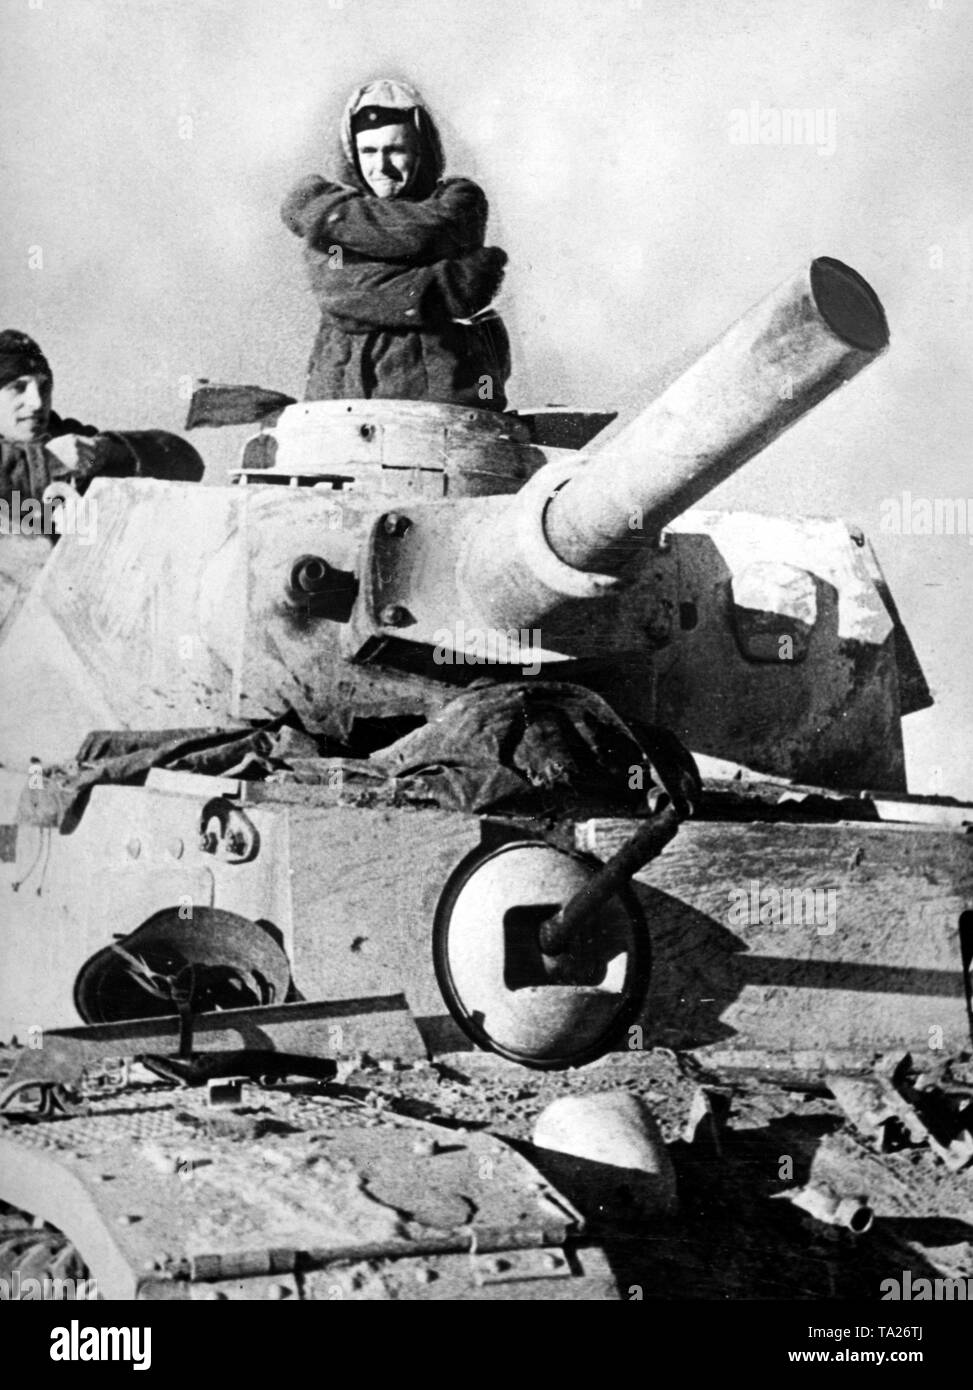 Die Besatzung eines Battle Tank (vermutlich Panzer III) versucht an der sub warm zu halten - Null Temperaturen. Foto der Propaganda Firma (PK): kriegsberichterstatter Lessmann. Stockfoto